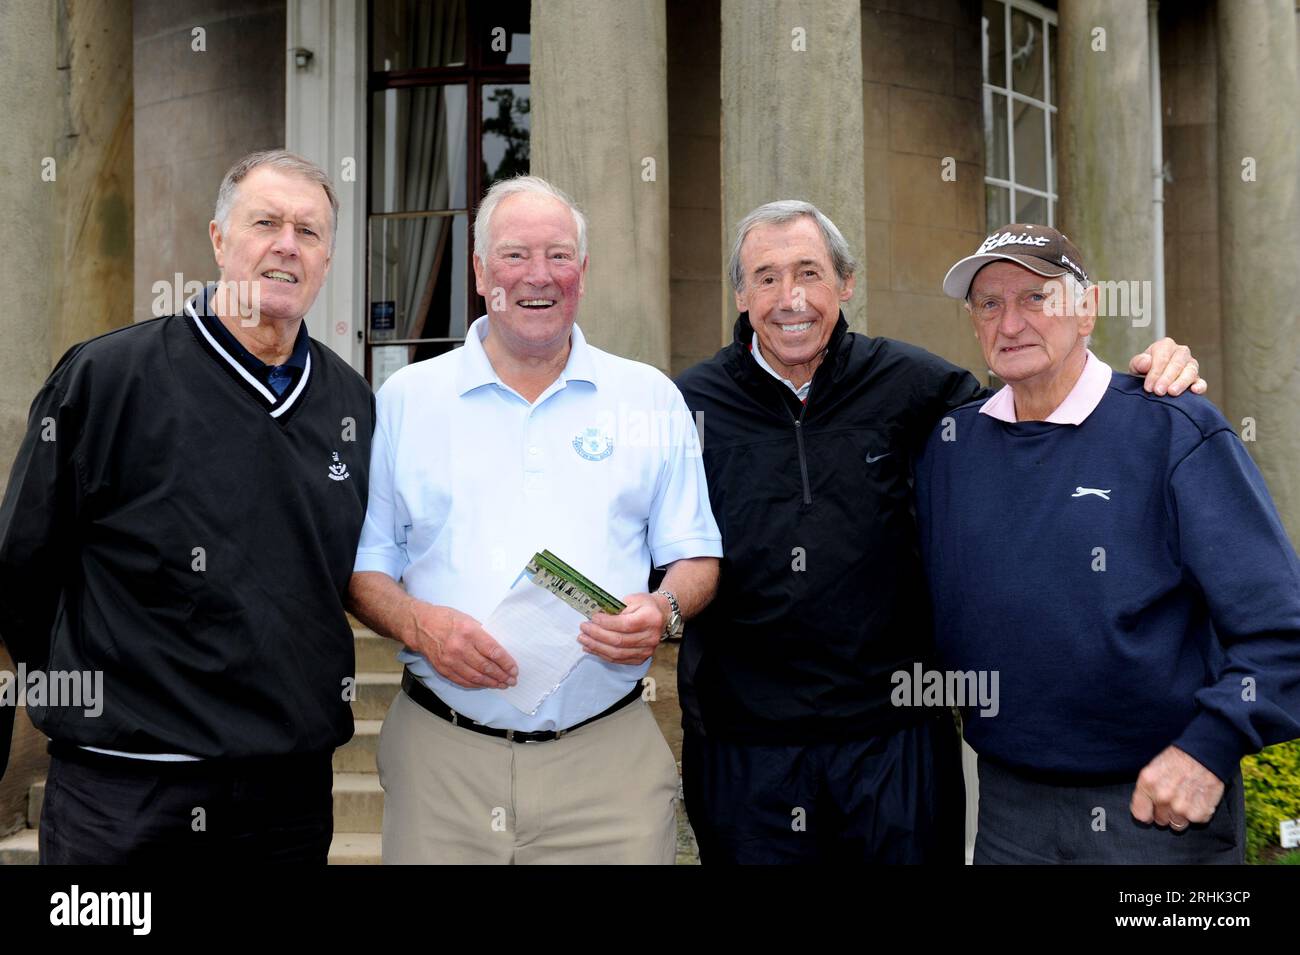 Douze des vainqueurs de la coupe du monde en Angleterre en 1966 ont été réunis sur le parcours de golf Brockton Hall dans le Staffordshire aujourd'hui. Geoff Hurst, Ron Flowers, Gordon Banks et George Eastham. Banque D'Images